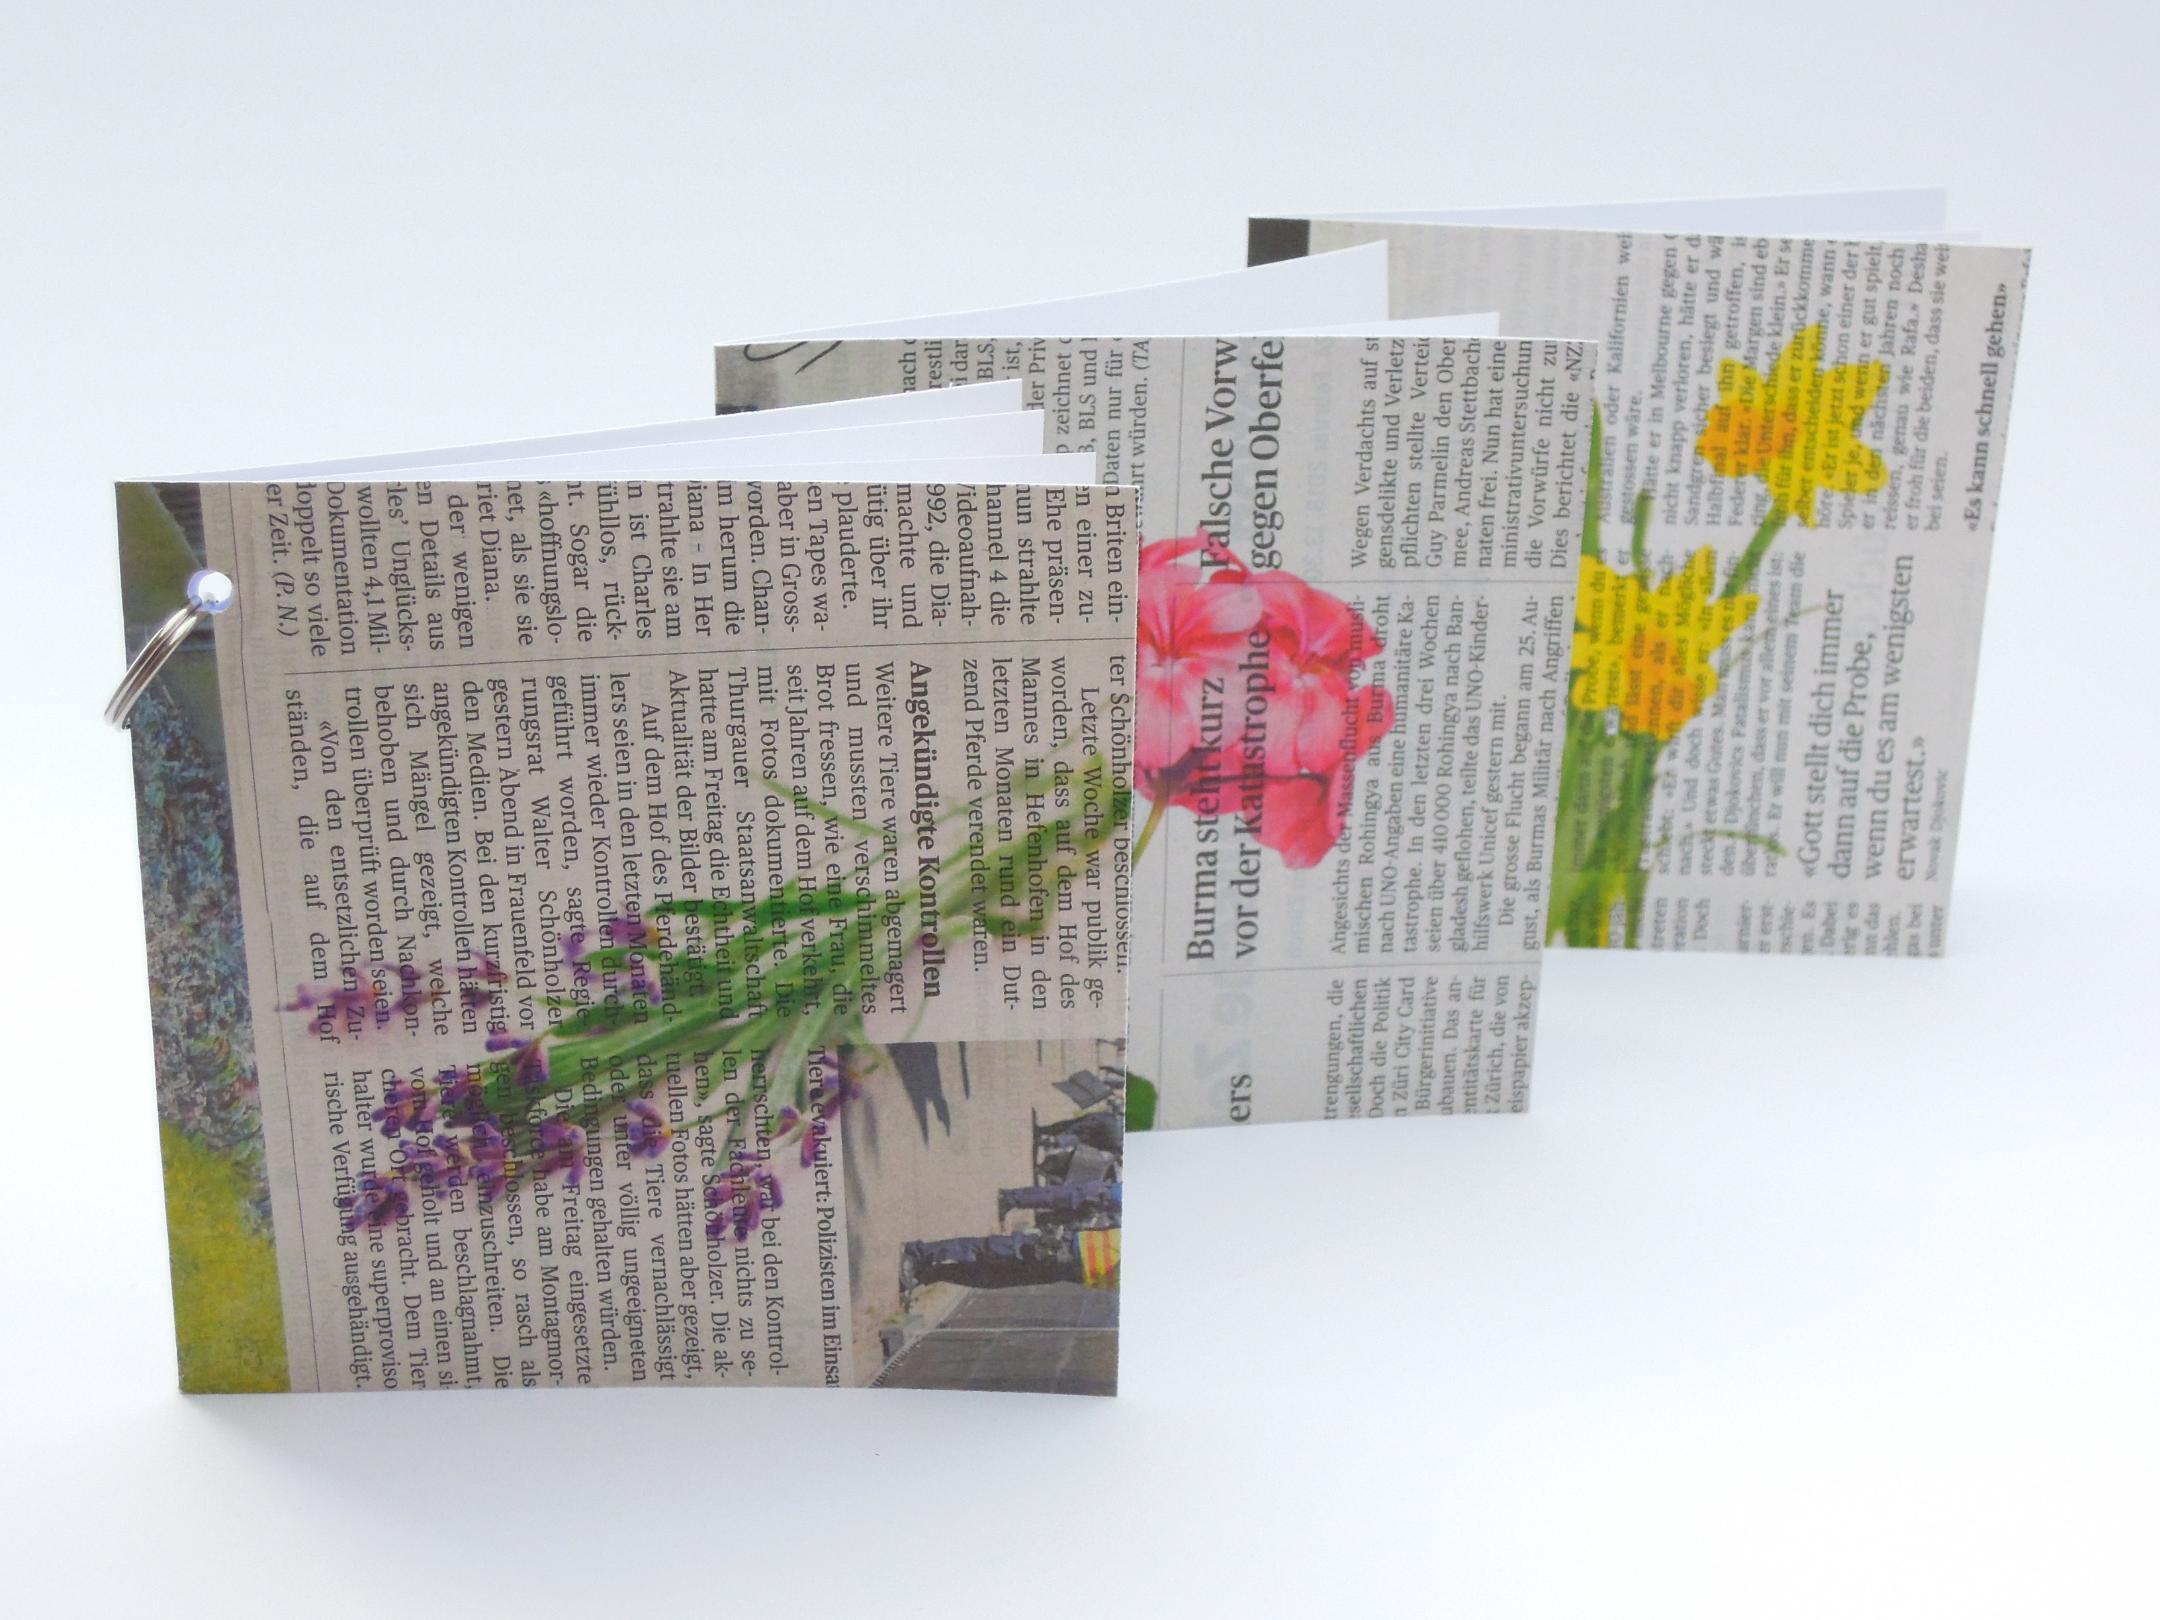 Die Up-Cycling Grusskarten werden mit einem Blumensujet bedruckt. Es gibt das Sujet in drei Farben: Lila, Rosa-Pink und Gelb